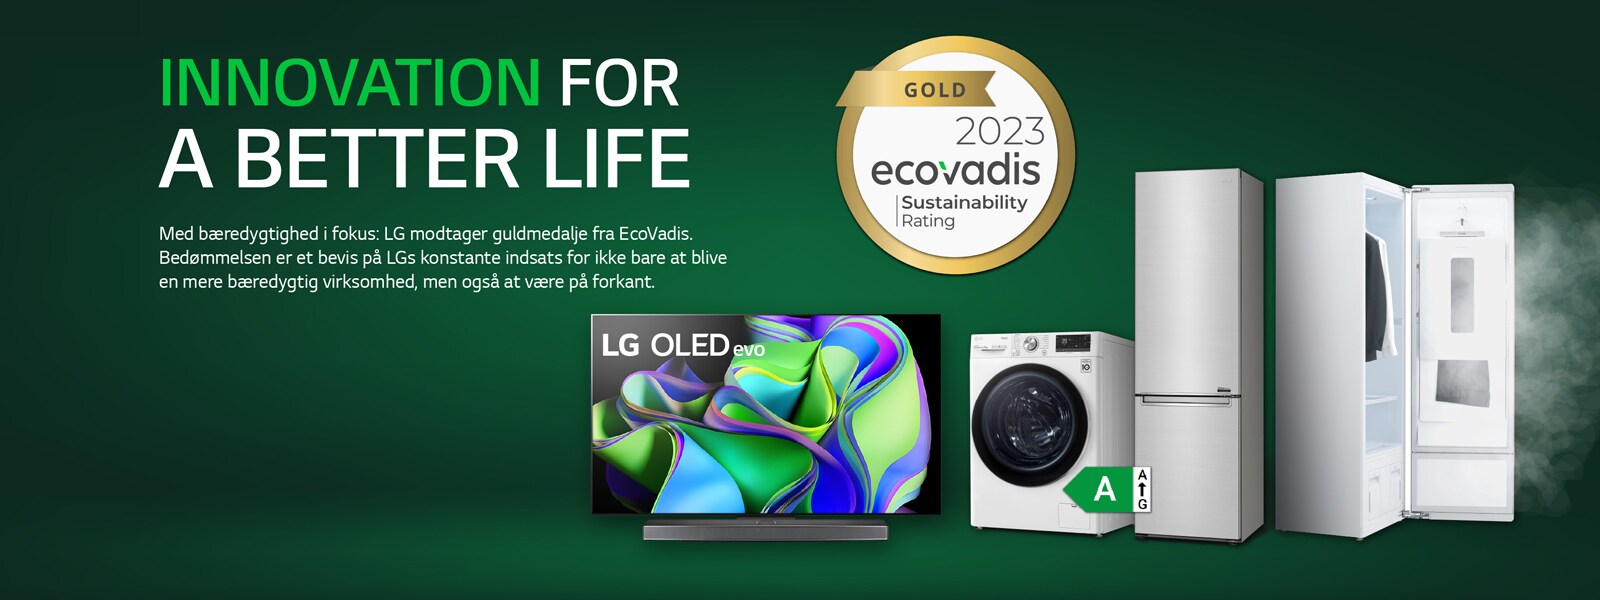 LG har nået det højest mulige niveau i bærekraftsrangeringen fra EcoVadis